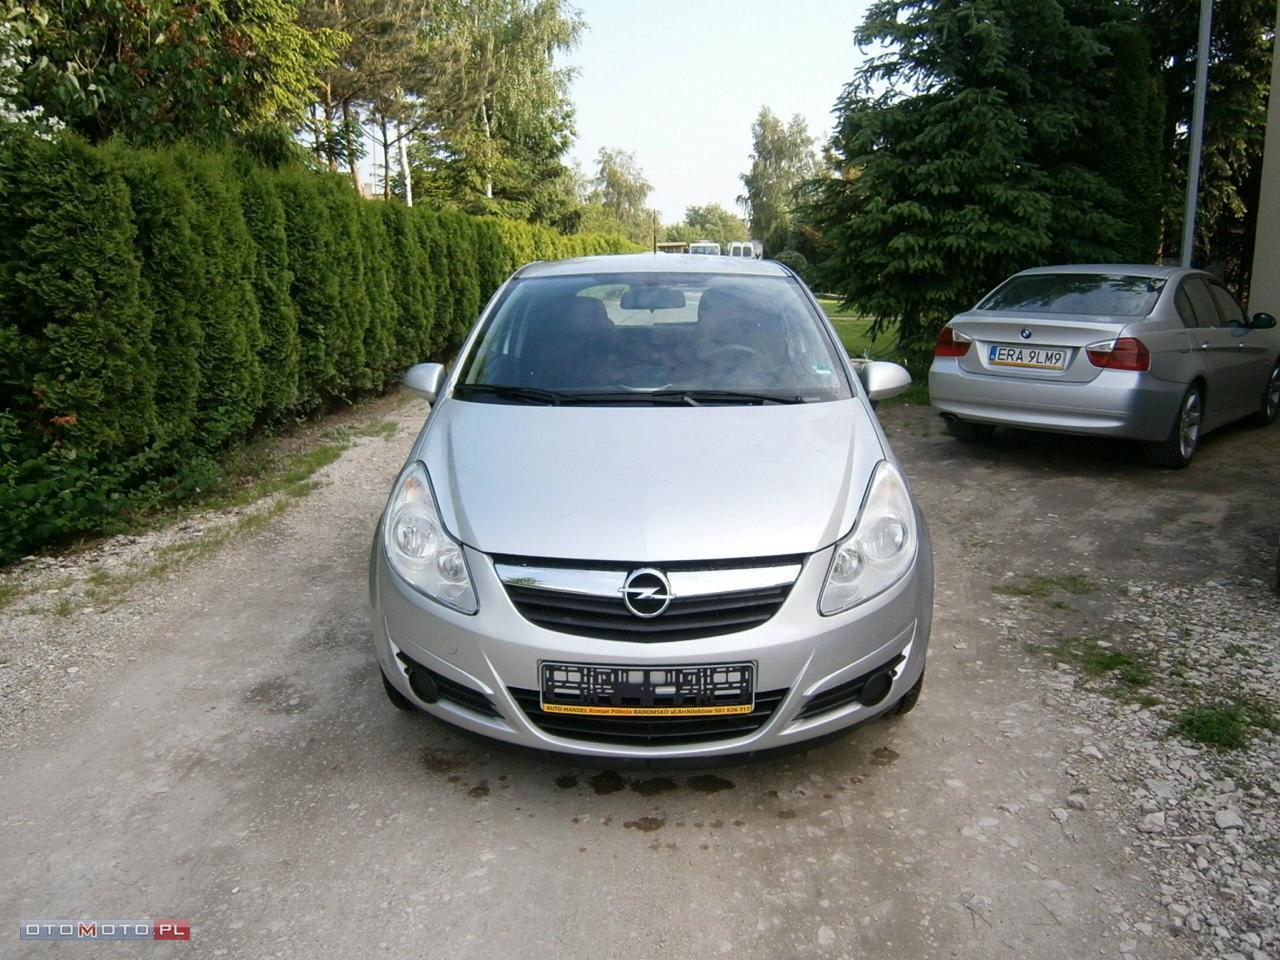 Opel Corsa 1.3 CDTi 75KM klima 56000km!